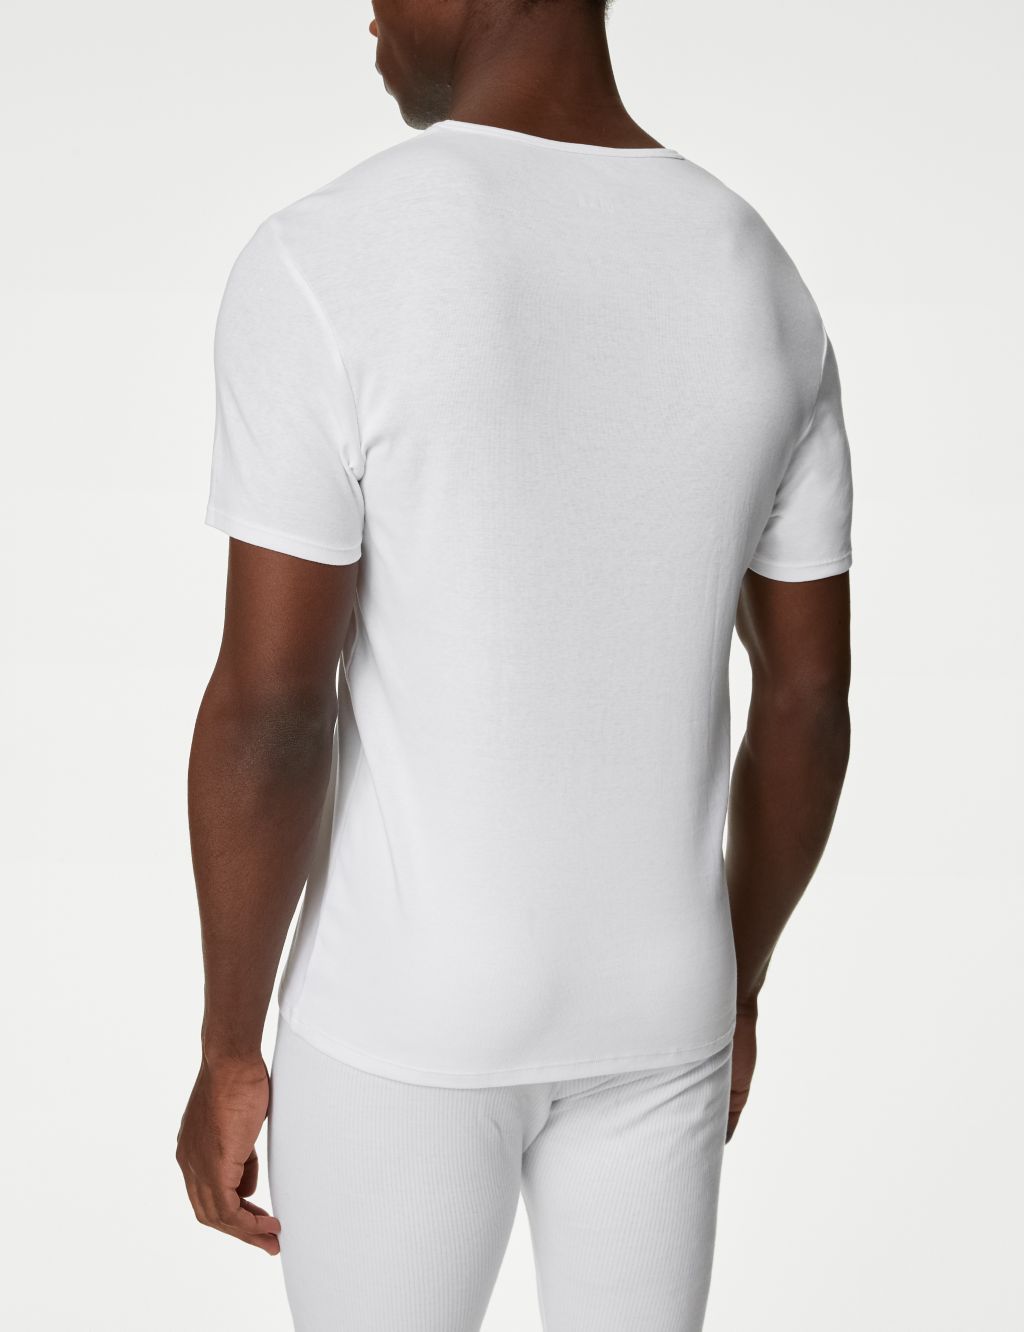 3pk Pure Cotton V-Neck T-Shirt Vests image 4